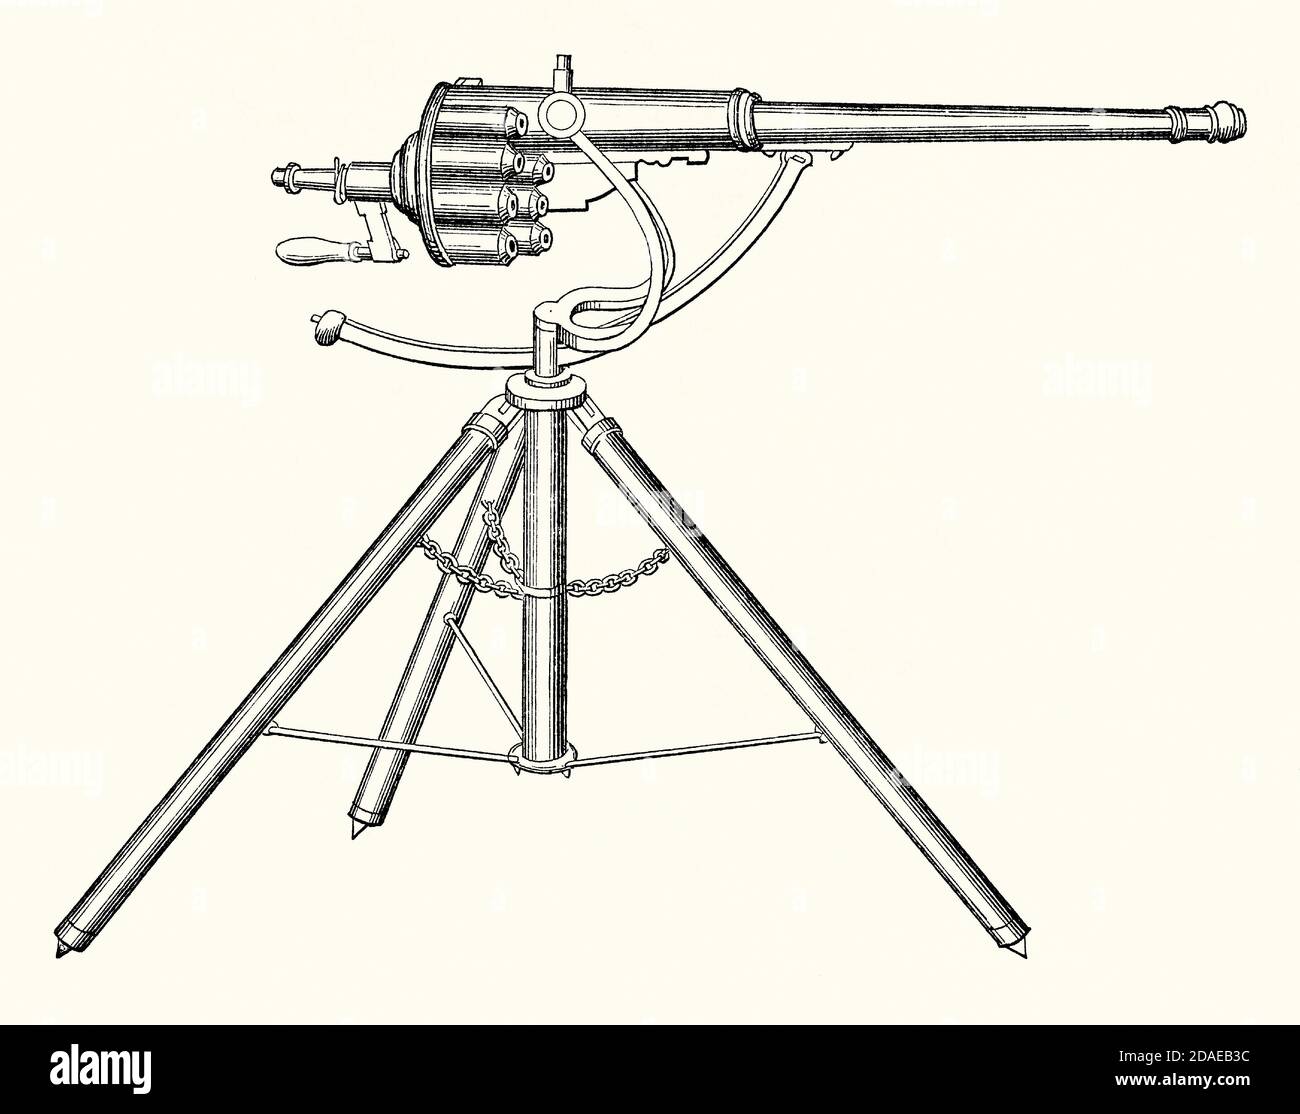 Una vecchia incisione di una pistola a fibbie brevettata nel 1718. E 'da un libro di ingegneria meccanica vittoriana del 1880. Il fucile da fibbie (conosciuto anche come arma da difesa) è stato un primitivo rivoltatore di fibbie inventato da James Buckle (1667–1724). È stata una delle prime armi a essere definite ‘marmi da fuoco’. Non è mai stato fatto in alcuna quantità o utilizzato durante il combattimento. Si tratta di un'arma flintlock monomarcata montata su treppiede dotata di un cilindro girevole ad azionamento manuale. Buckle pubblicizzò la sua applicazione principale come pistola anti-imbarco per le navi. Foto Stock